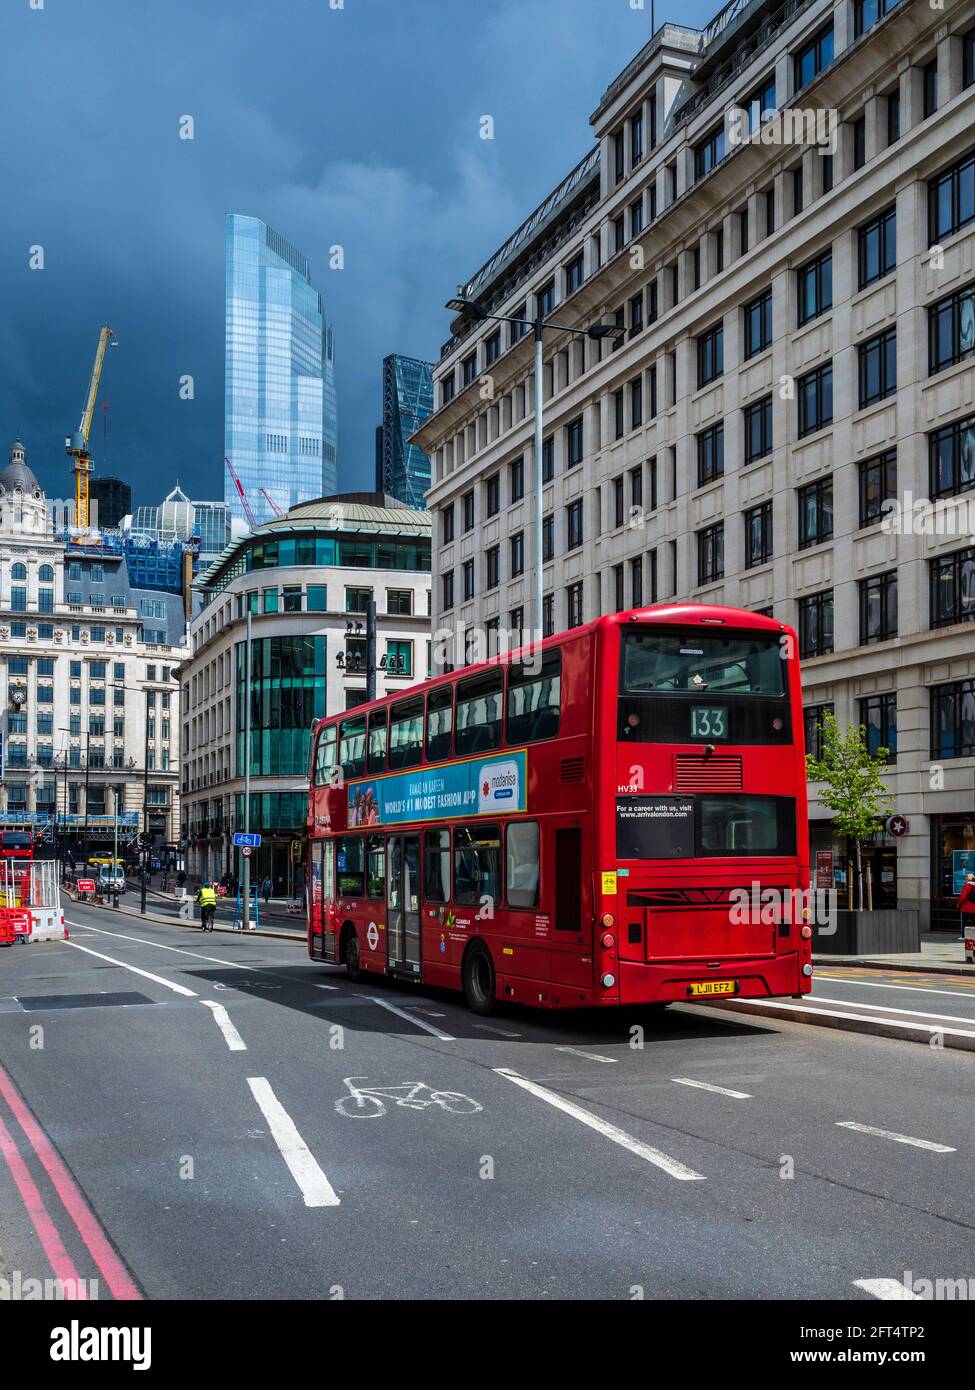 Un bus rouge londonien dans le quartier financier de la City of London. Banque D'Images